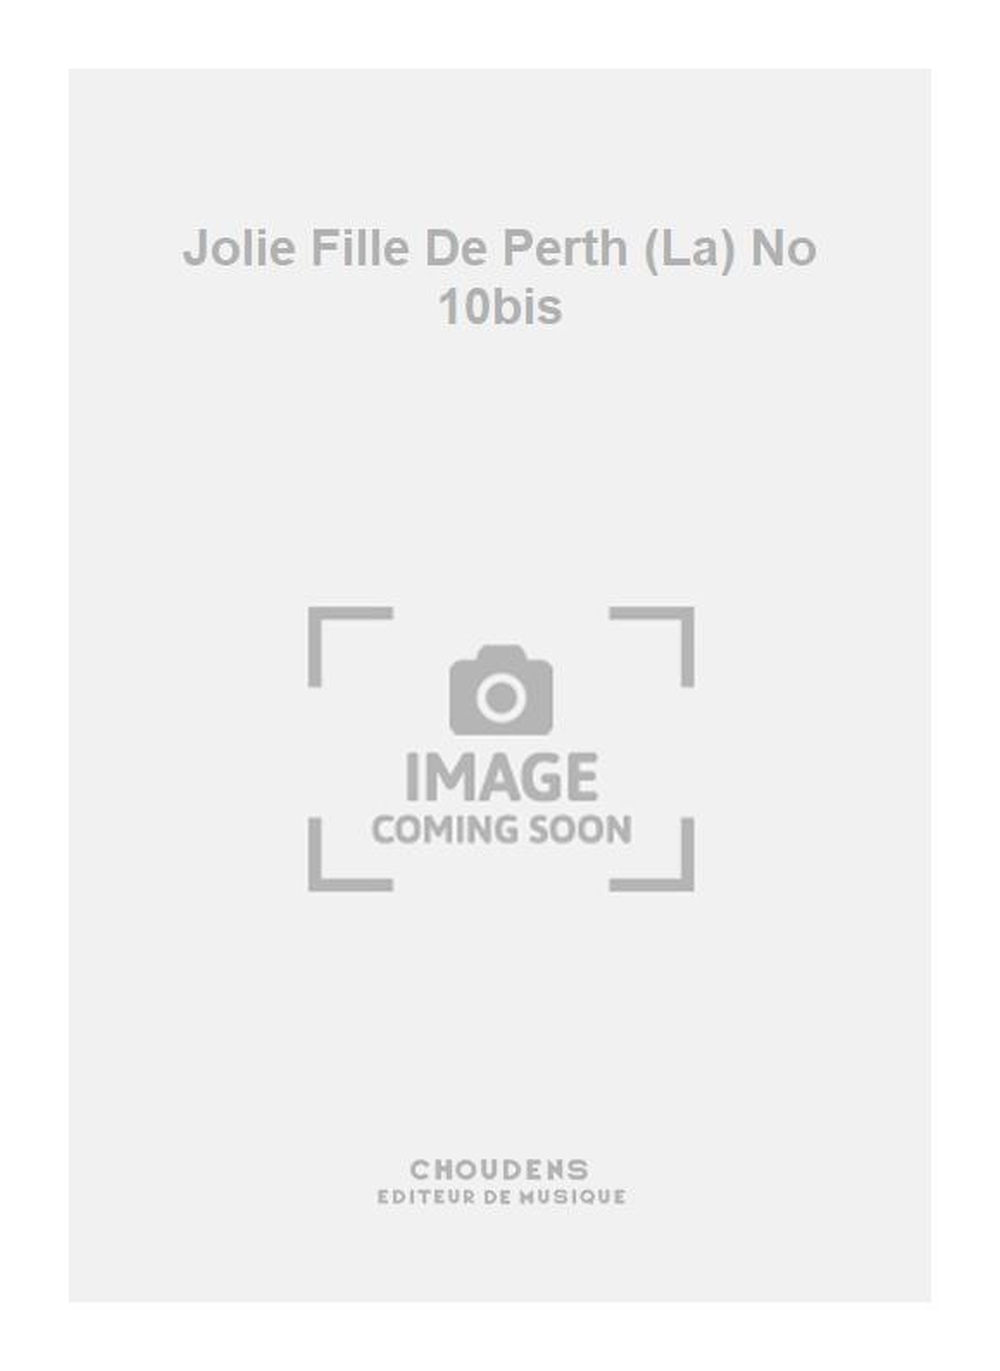 Georges Bizet: Jolie Fille De Perth (La) No 10bis